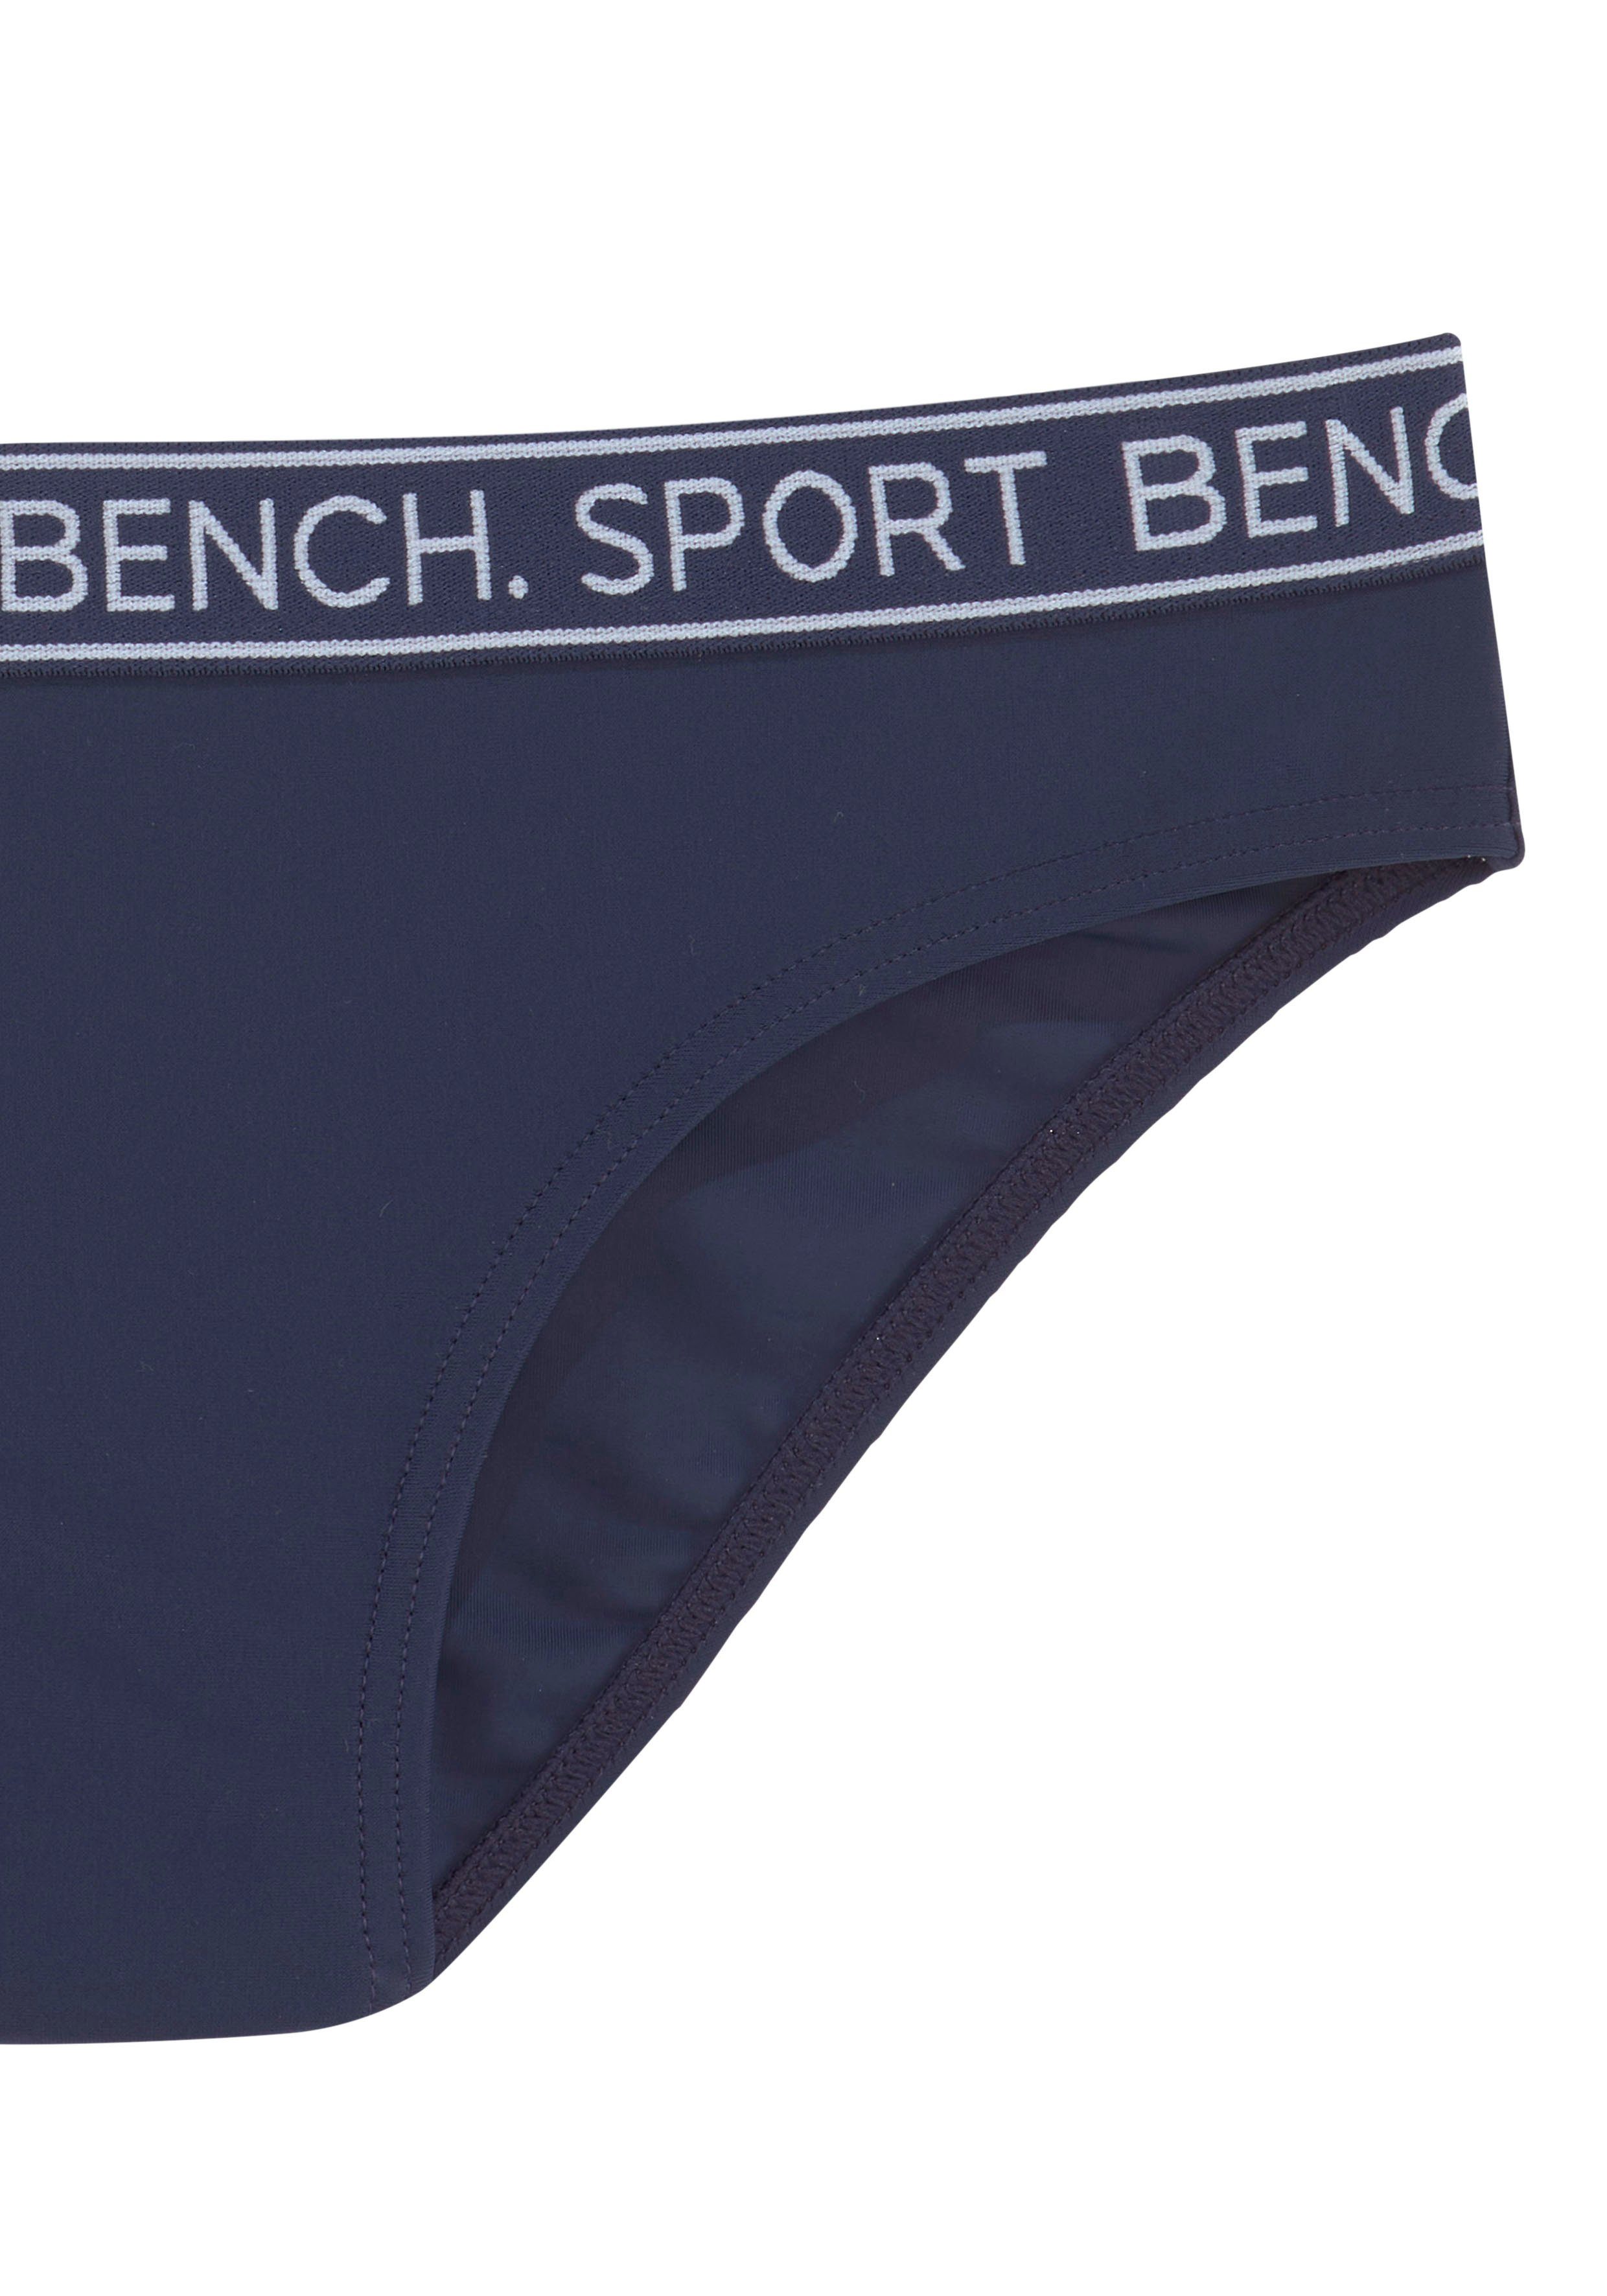 Bench. Triangel-Bikini Yva Kids marine Design in sportlichem und Farben